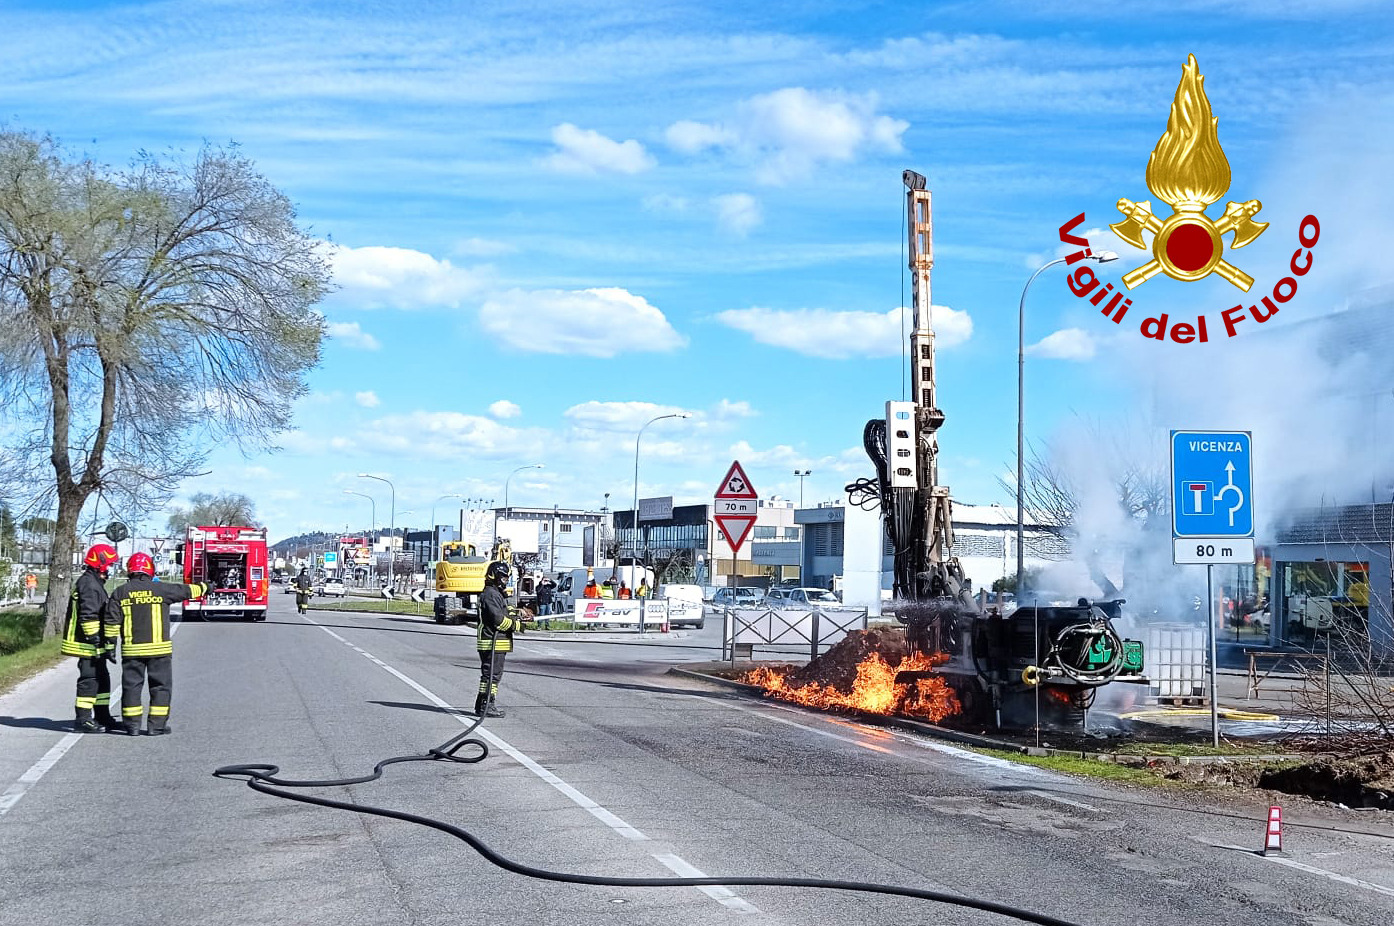 Le foto del "dardo" di fuoco sulla SR11 ad Altavilla Vicentina: traffico deviato